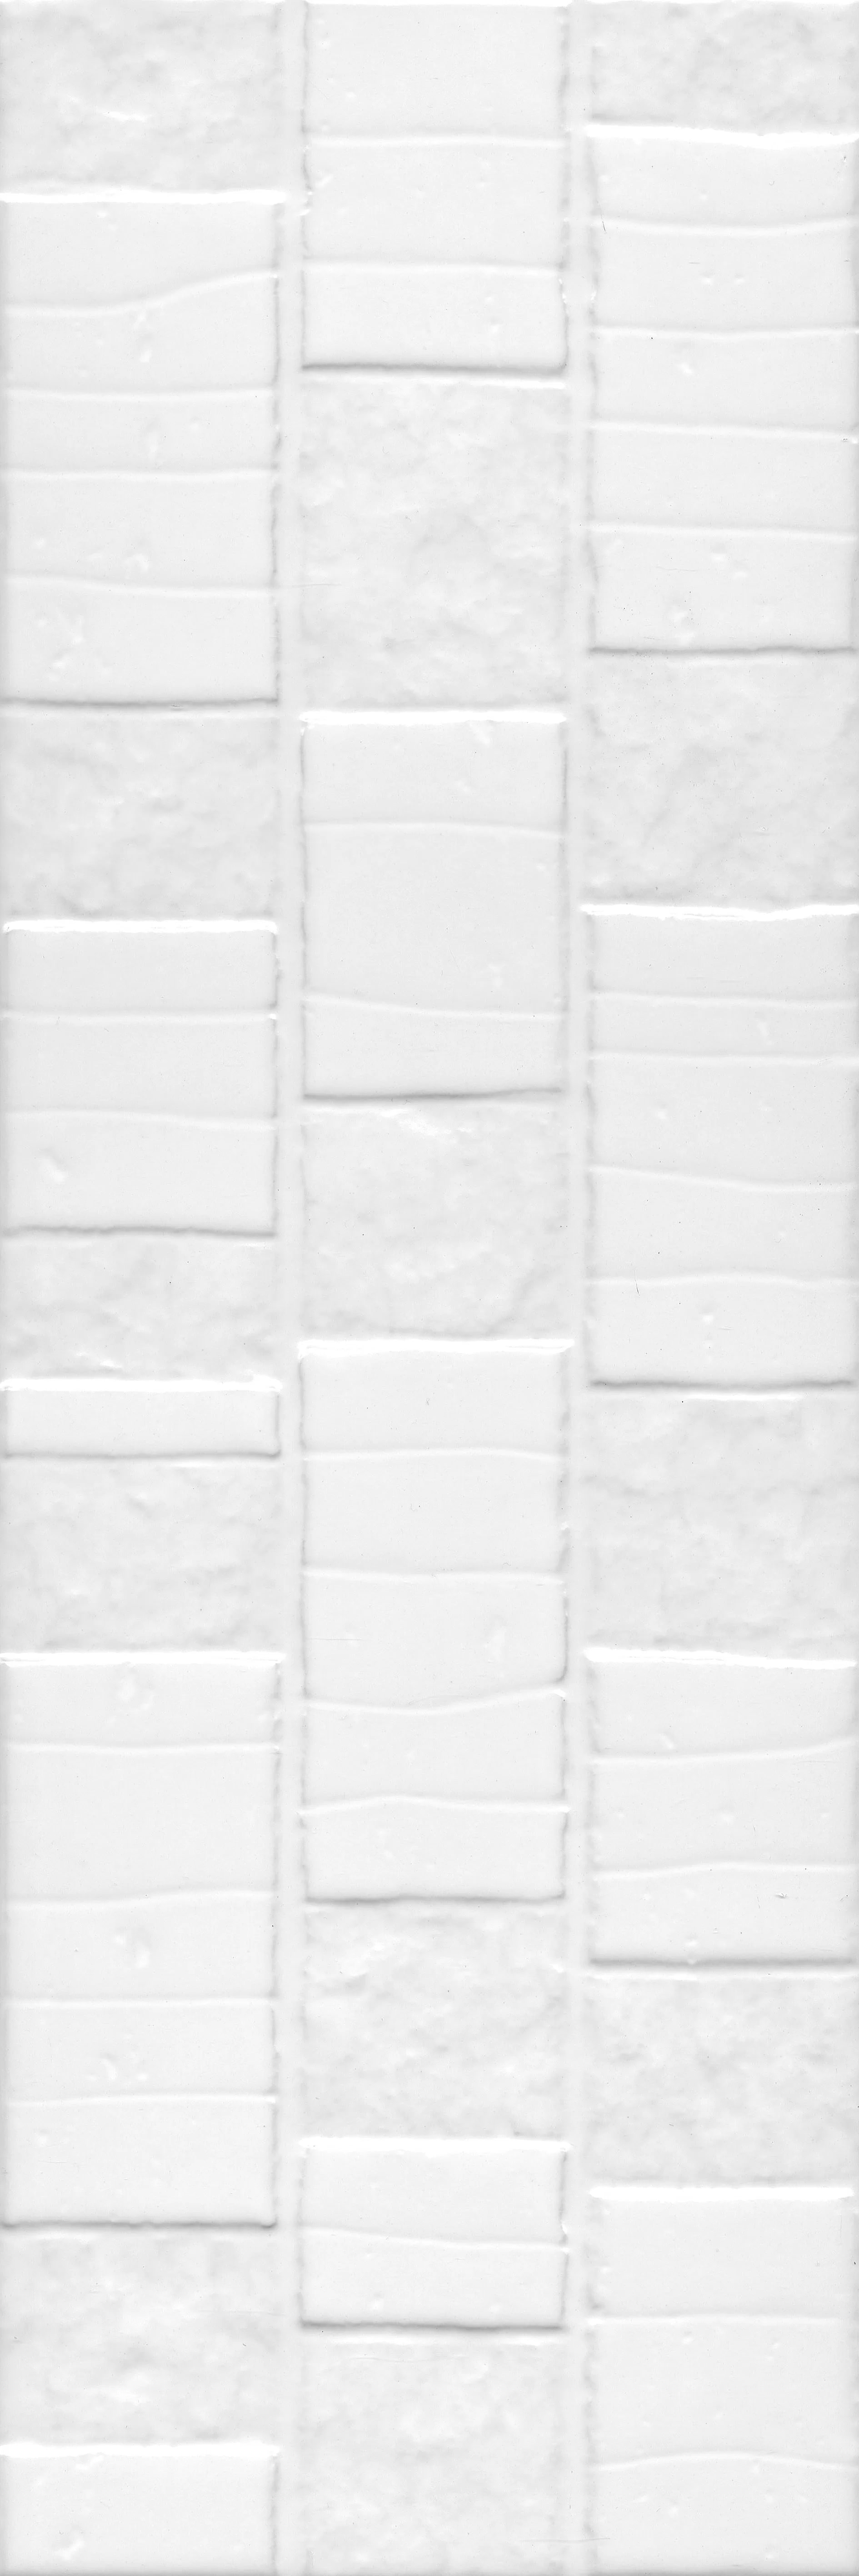 60170 Настенная плитка Бьянка белый глянцевый антик 60x20 Kerama Marazzi